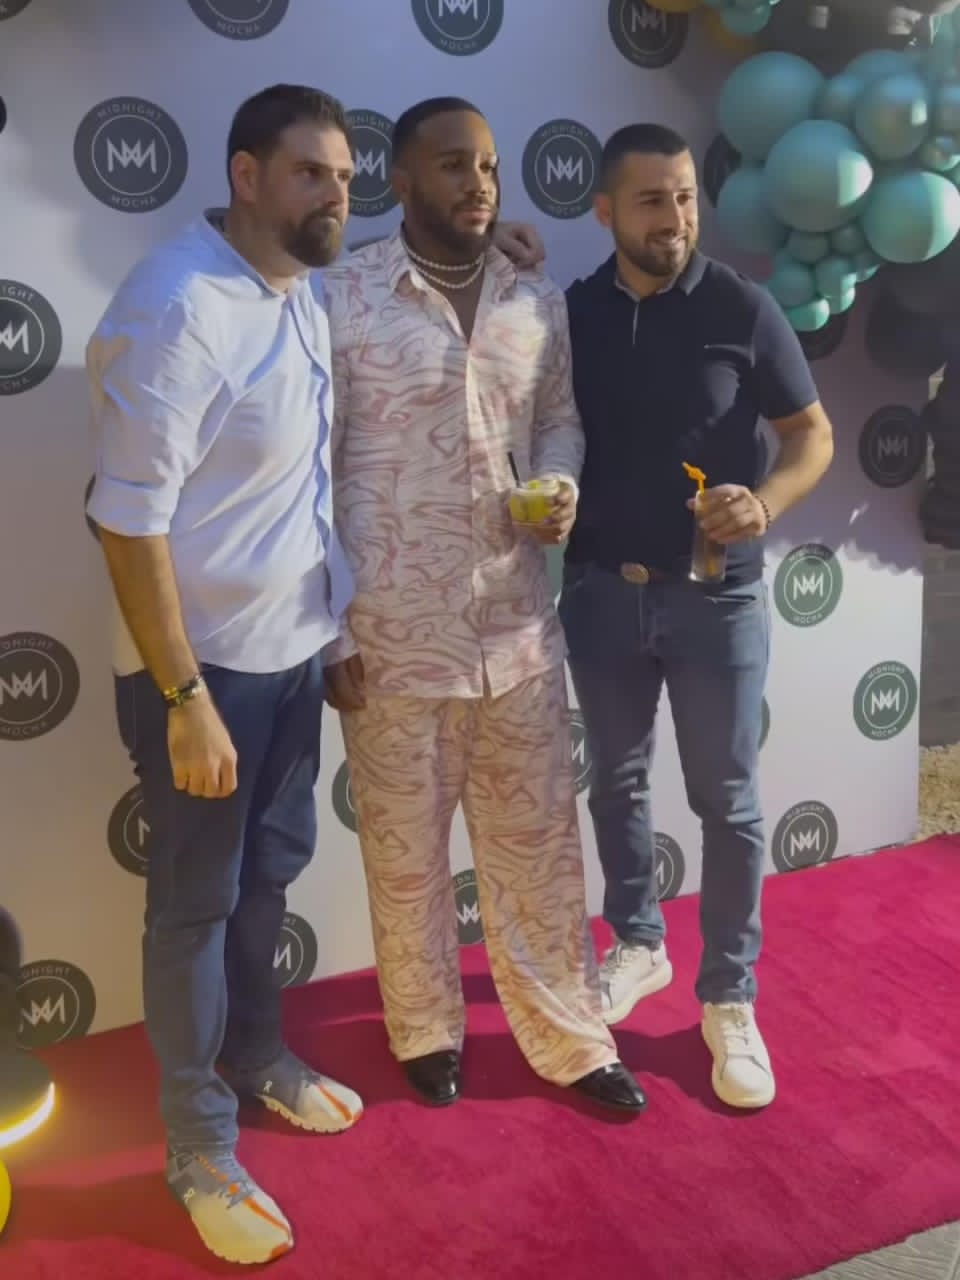 Bbnaija Celebrities Attends Kiddwaya's New Restaurant Launch In Lagos (VIDEO/PHOTOS)